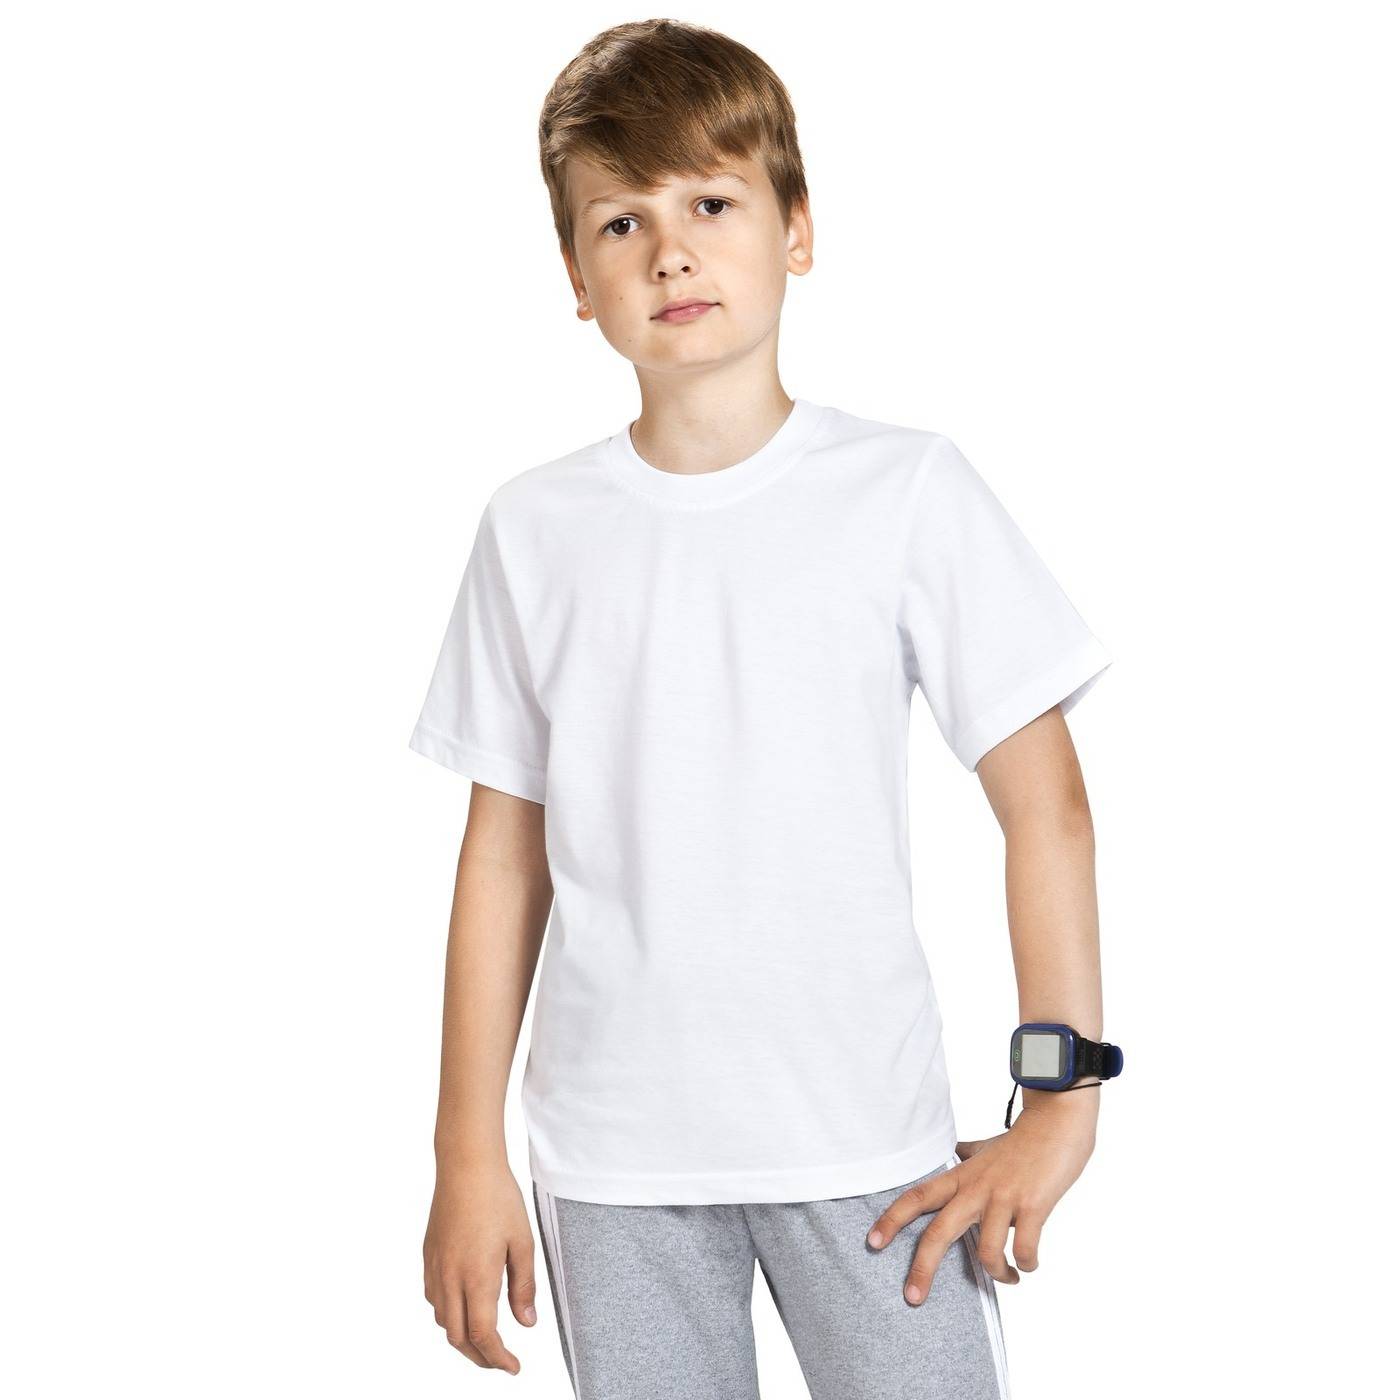 Длинные футболки для мальчиков. "Детская белая футболка". Мальчик в белой футболке. Футболка детская белая для мальчика. Белые футболки детские.